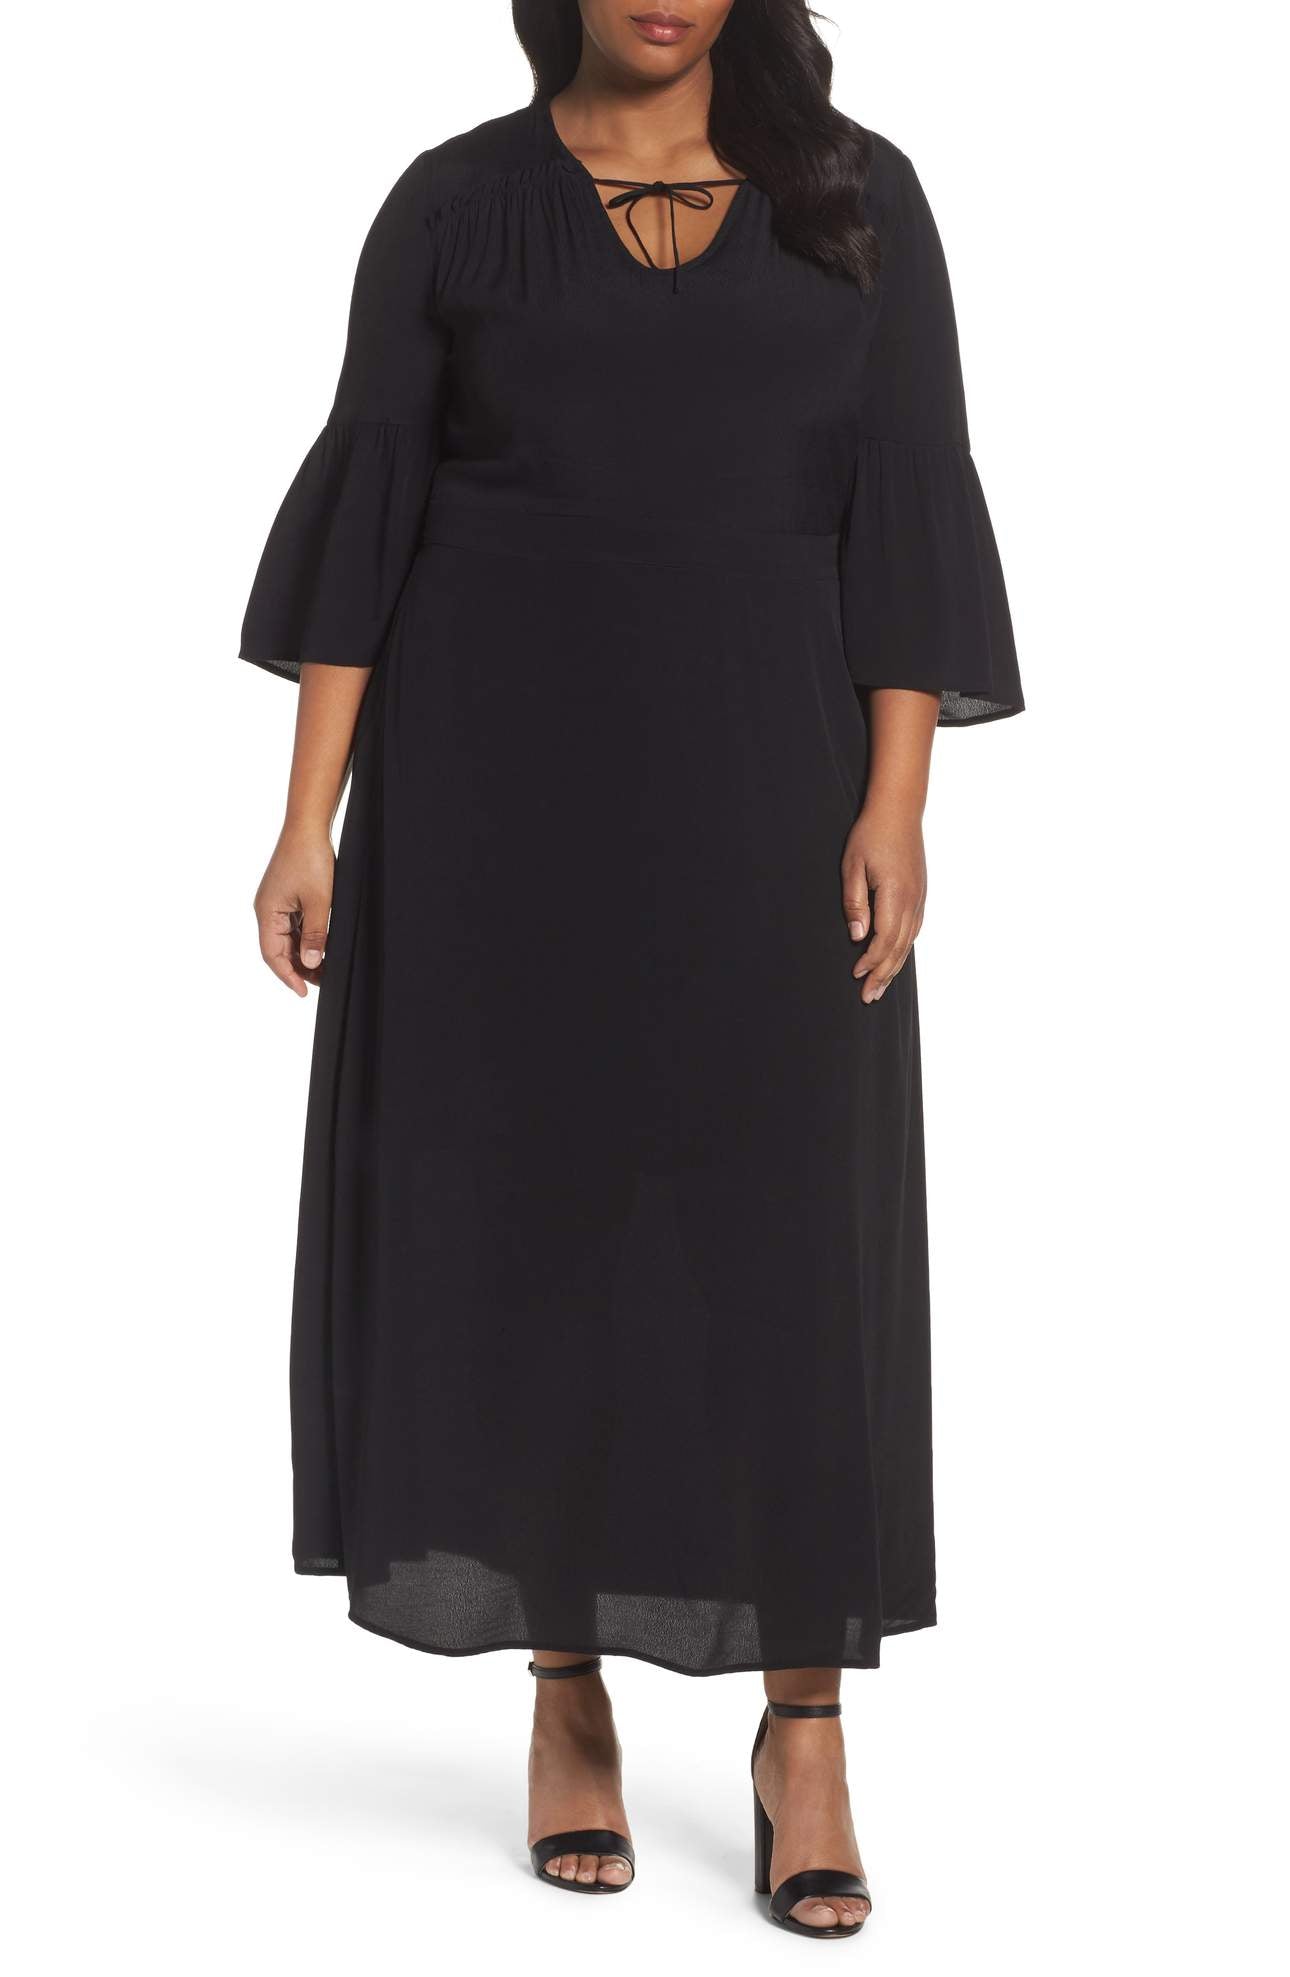 Sejour Bell Sleeve Maxi Dress (Plus Size) – Pit-a-Pats.com